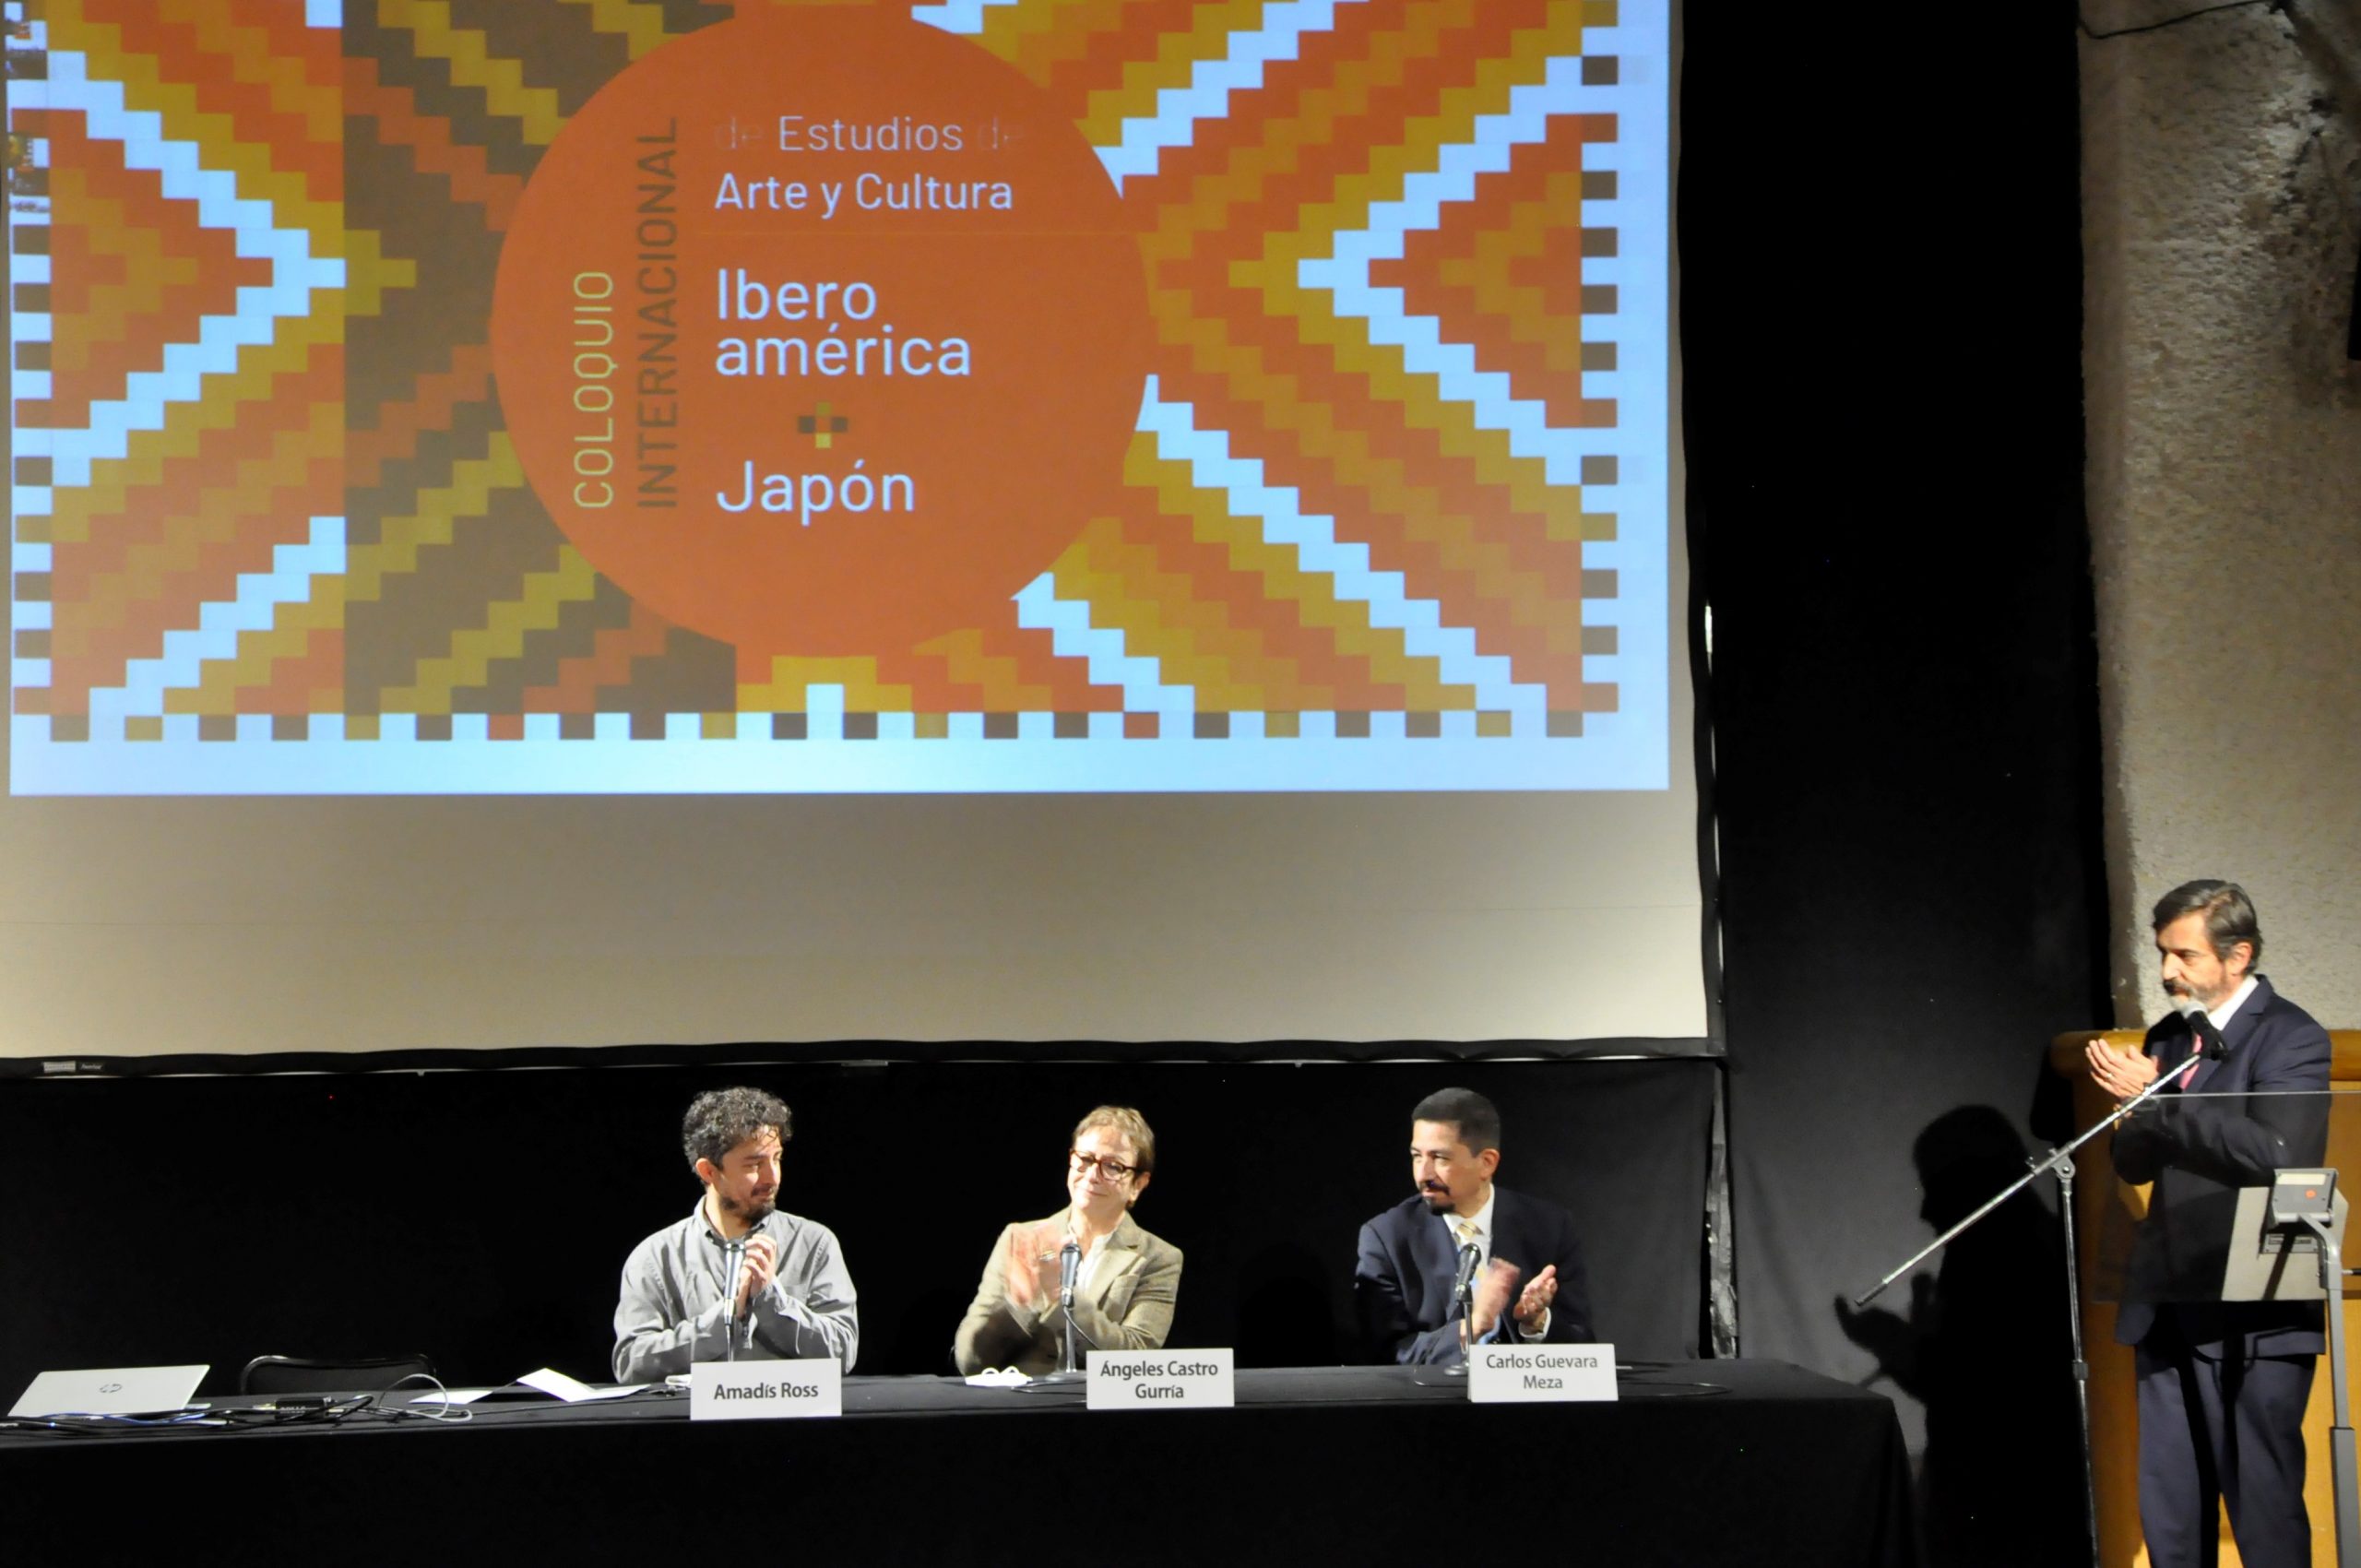 Videos del Coloquio Internacional de Estudios de Arte y Cultura Iberoamérica-Japón